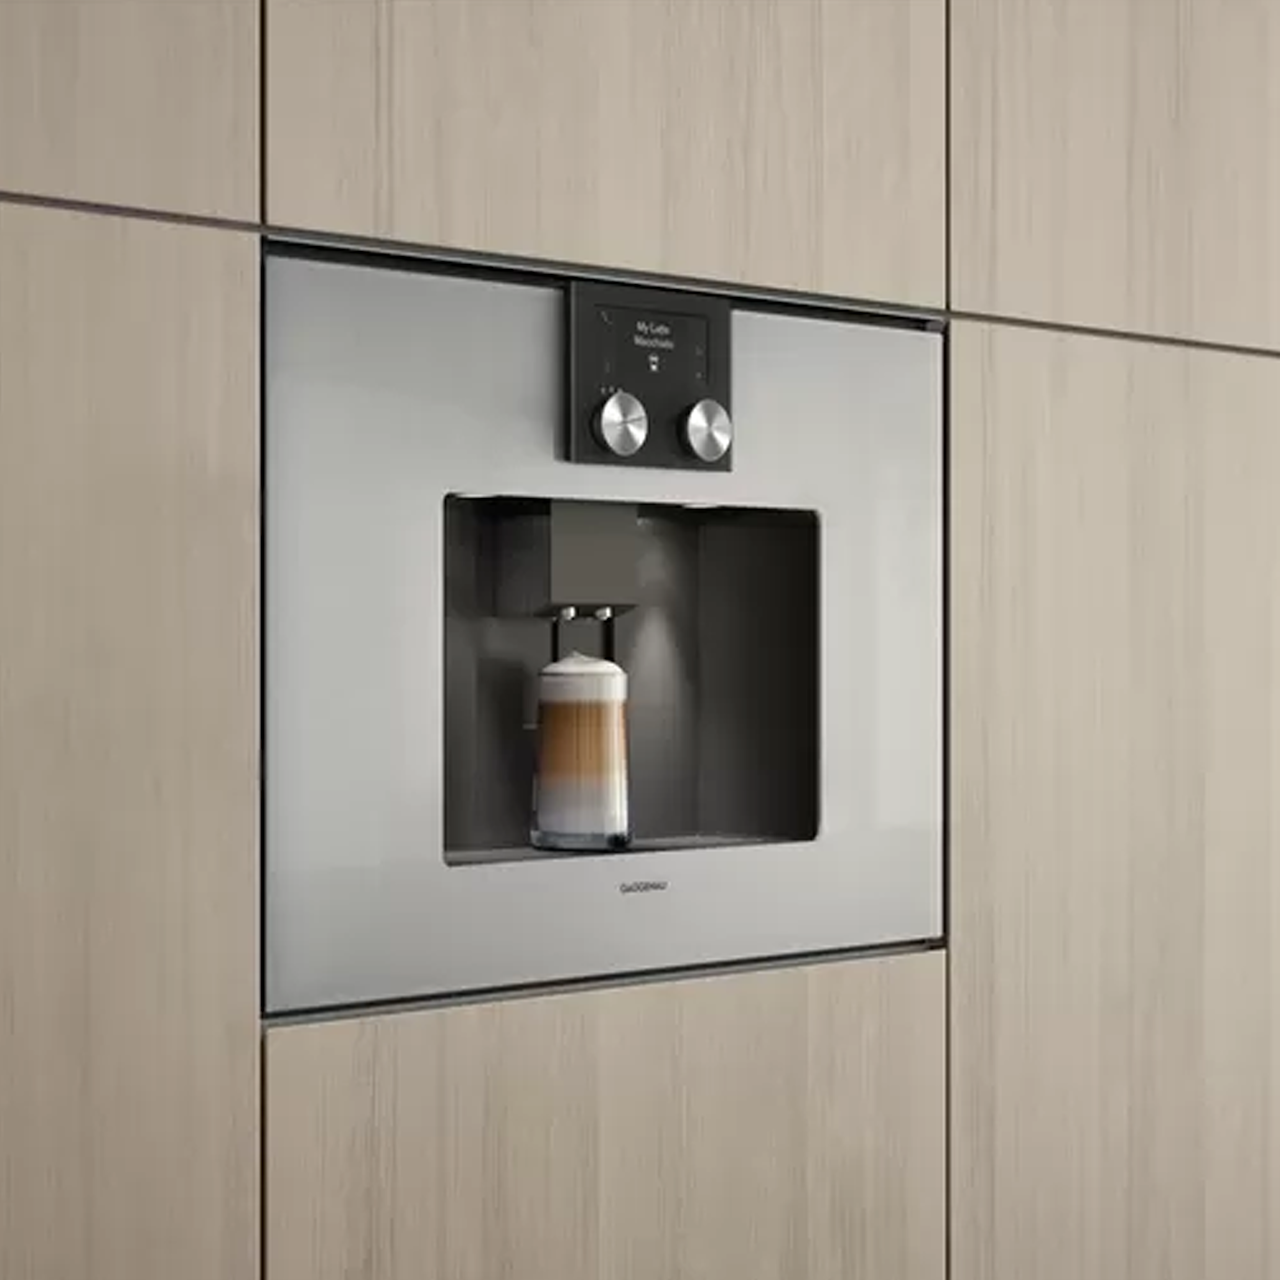 Espresso machine S200 - Silver